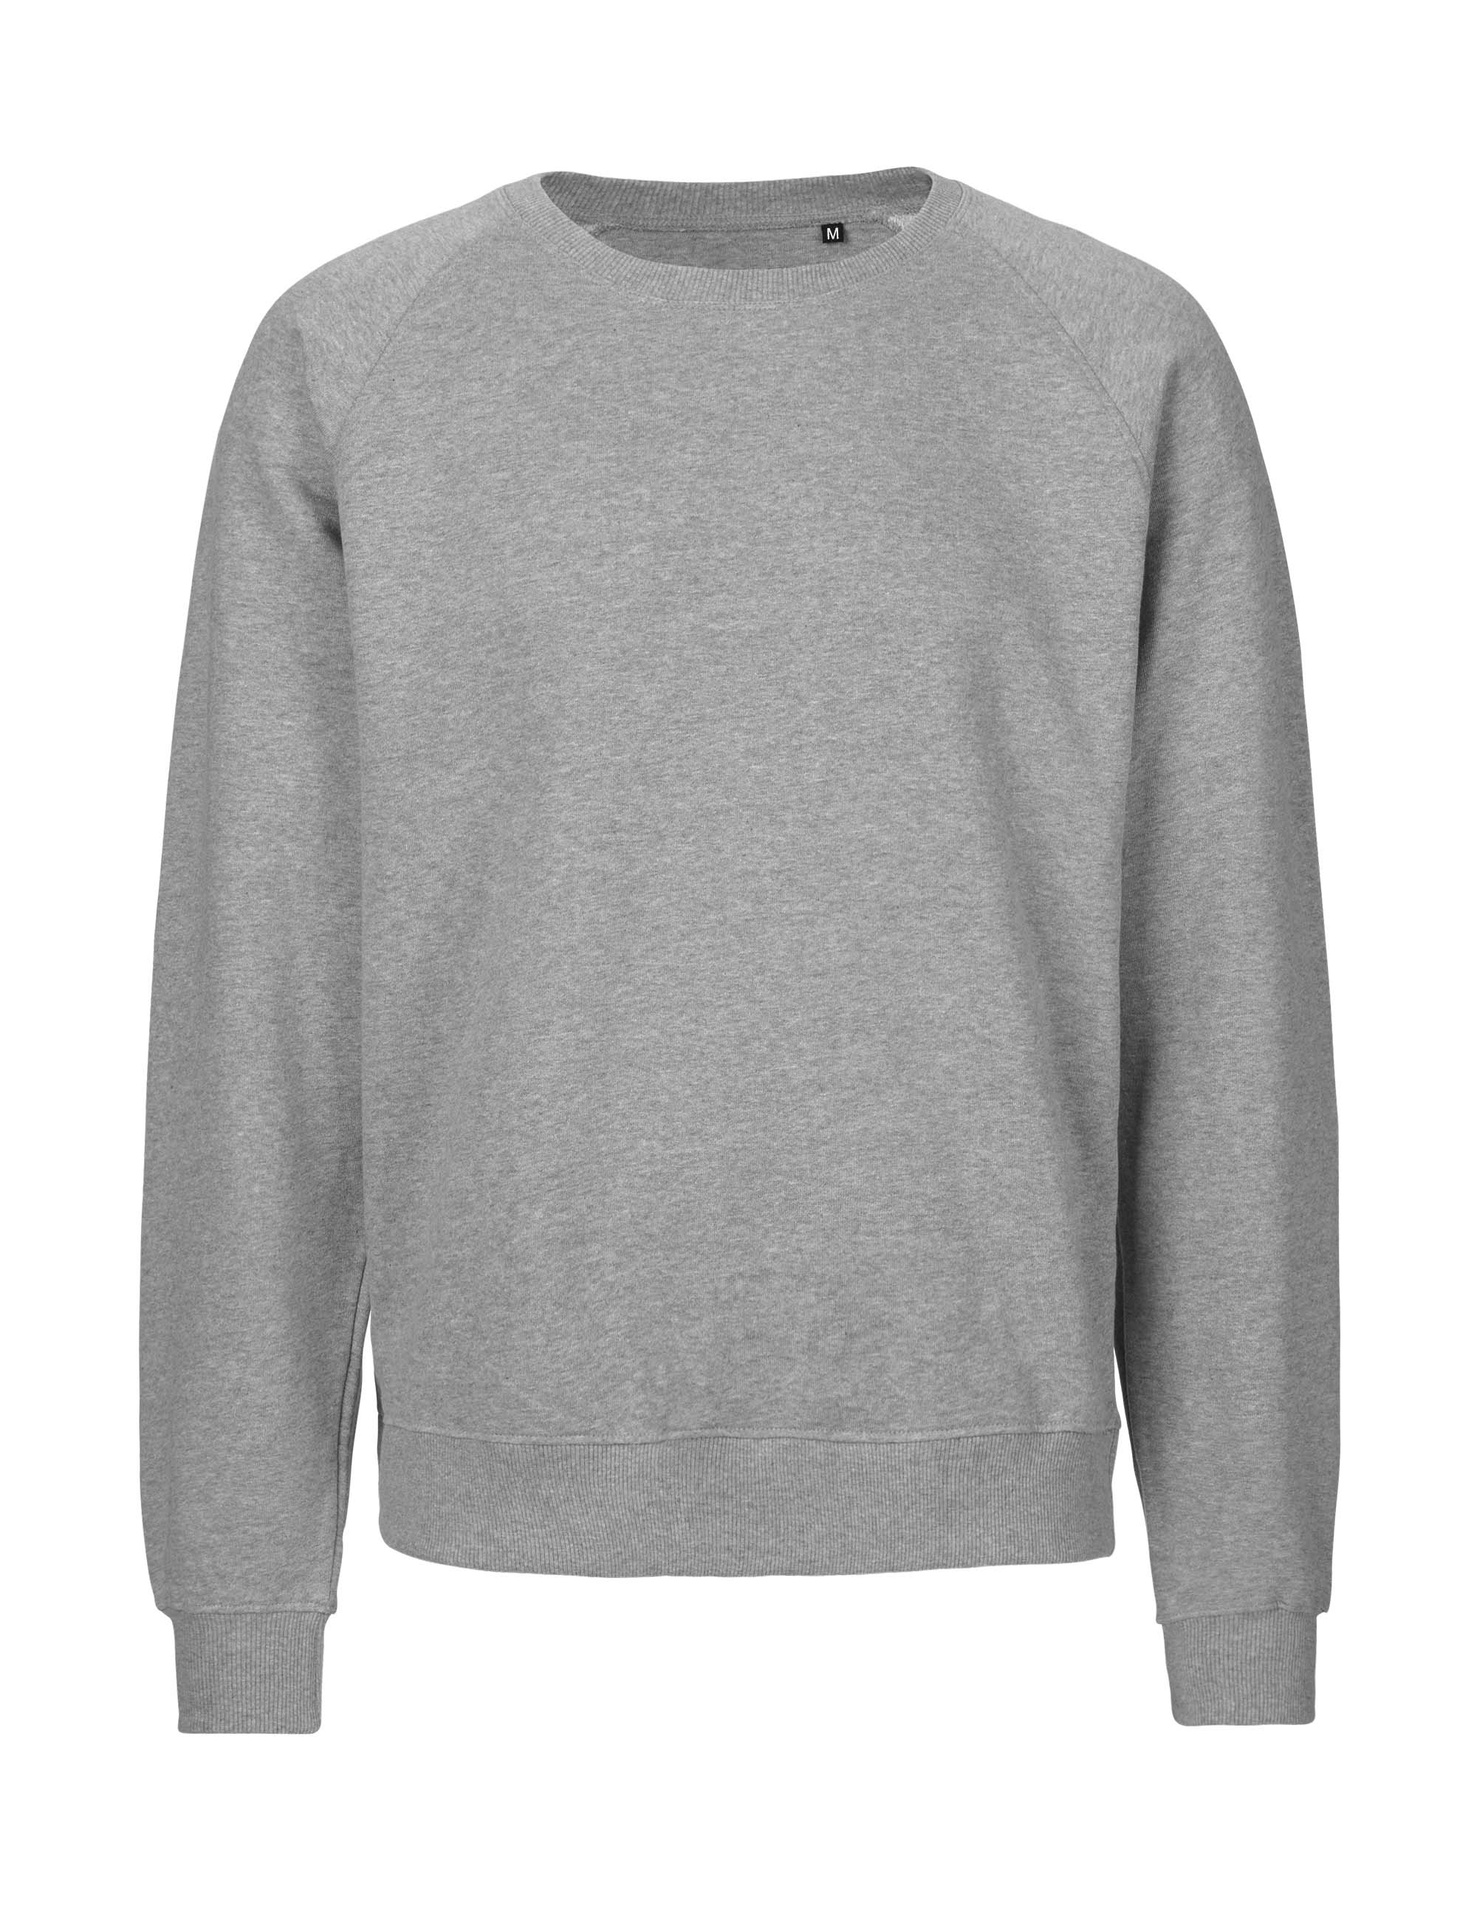 [PR/06032] Unisex Tiger Cotton Sweatshirt (Sport Grey 21, 3XL)